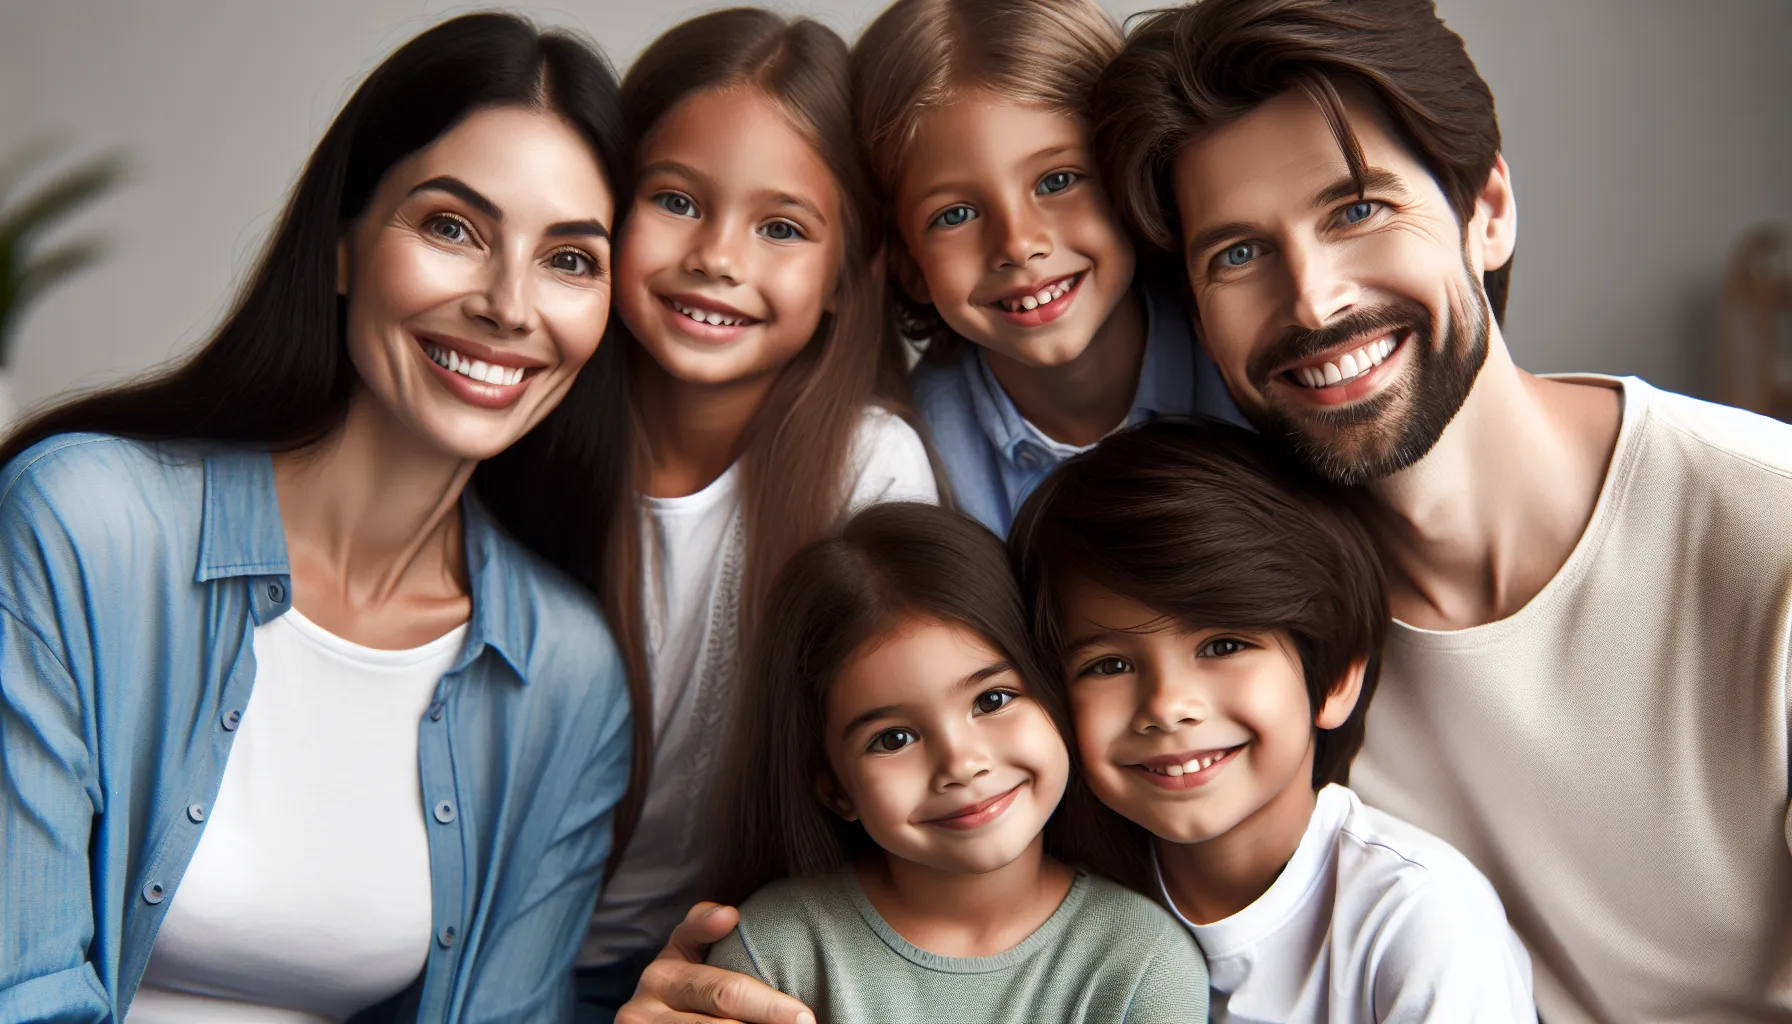 Una familia feliz con padres adoptivos y niños sonrientes, reflejando la enseñanza bíblica sobre la adopción de hijos.